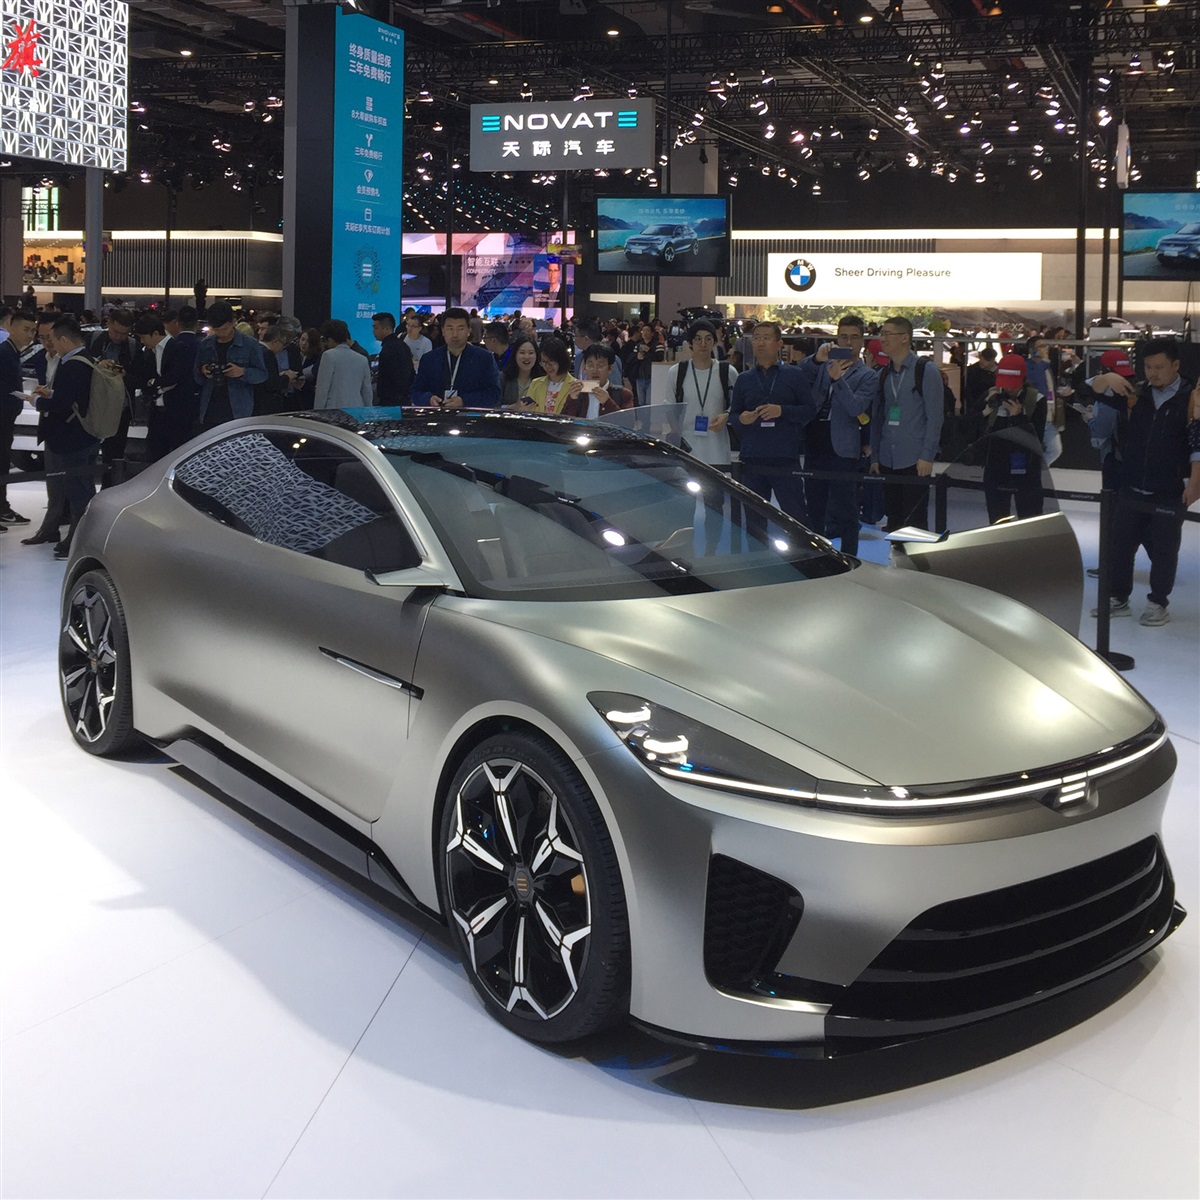 مارشدير | تقرير: 10 سيارات كهربائية جديدة صينية طرحت في شنغهاي 2019